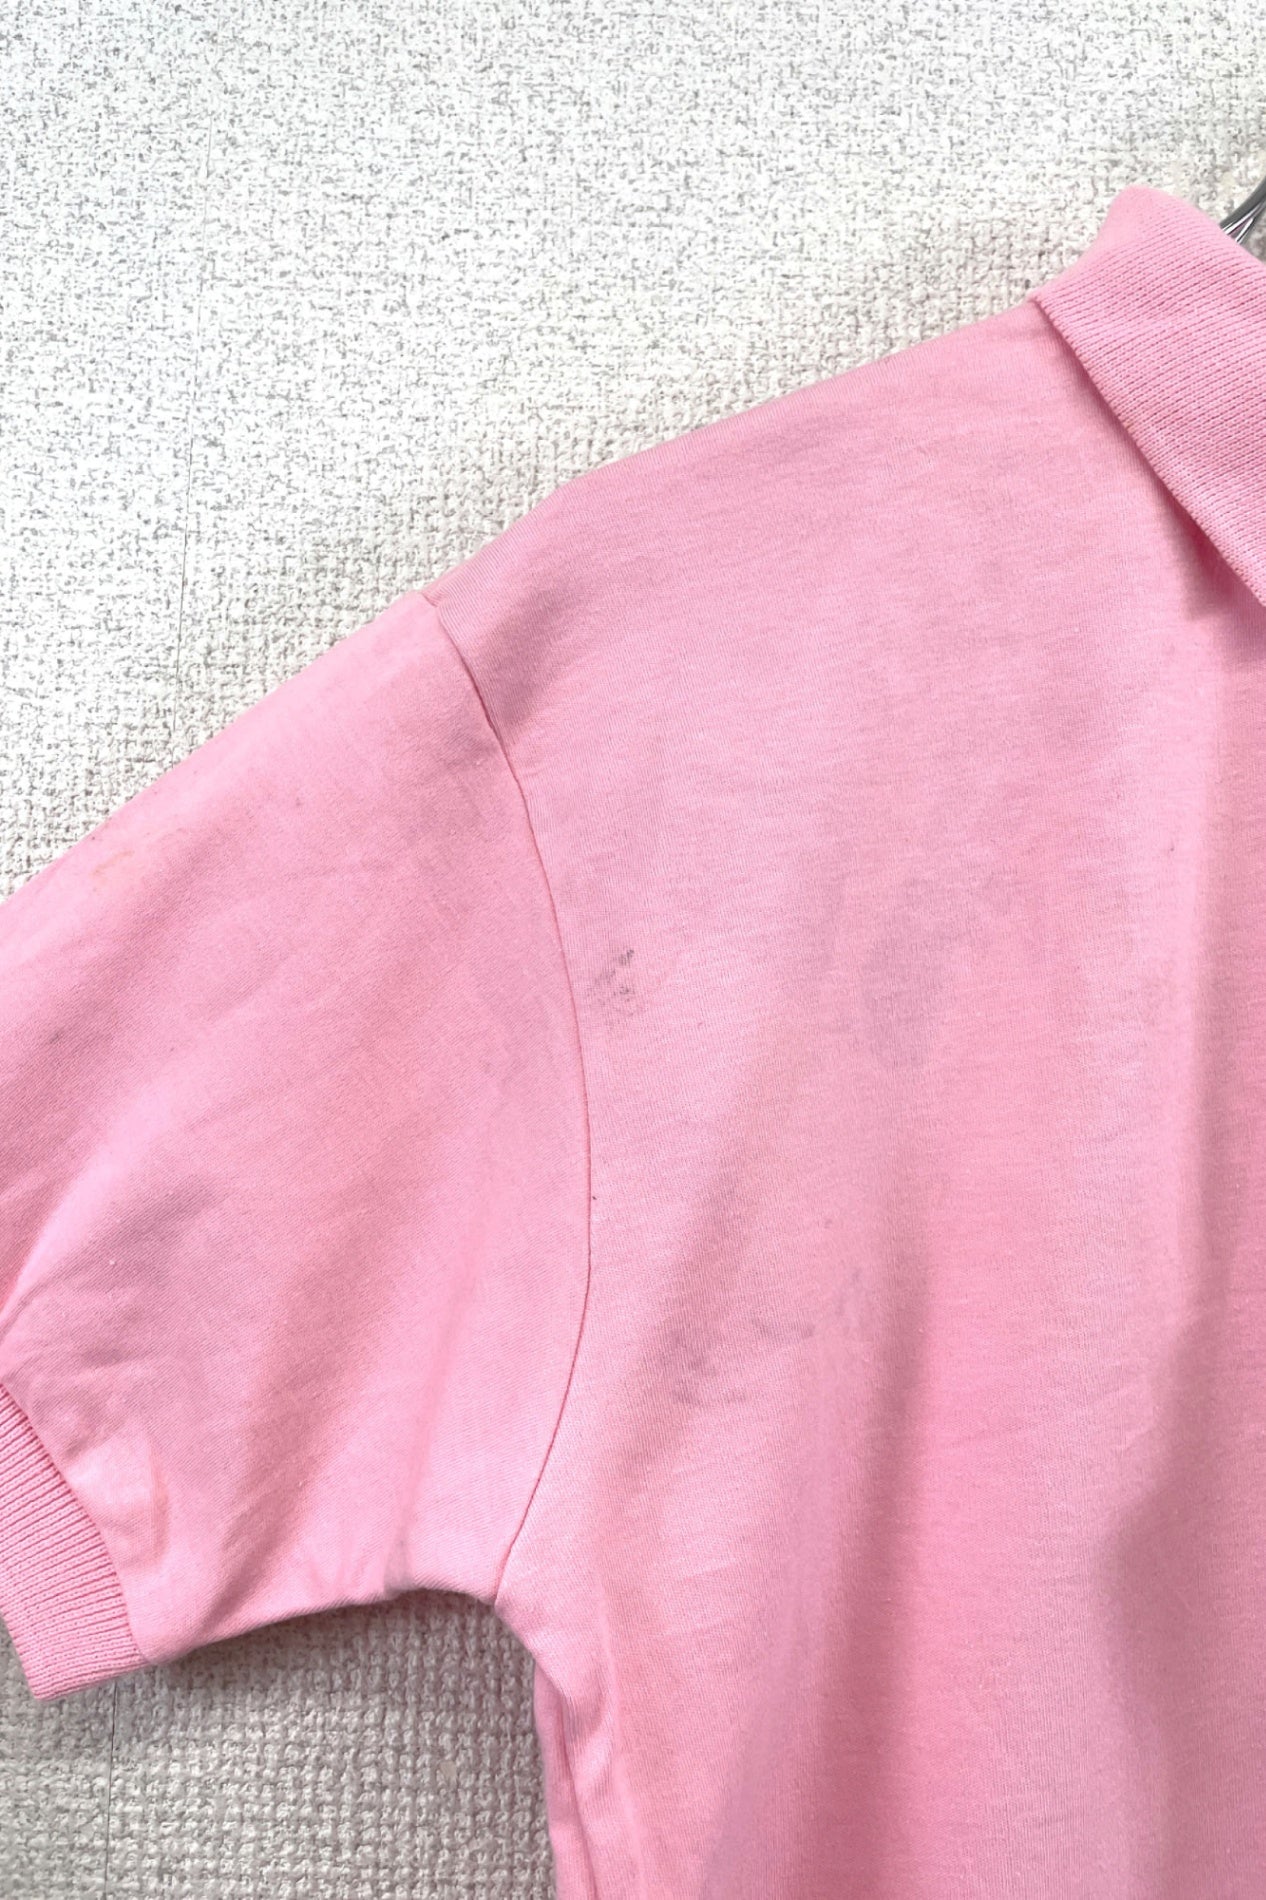 Ralph Lauren pink polo shirt